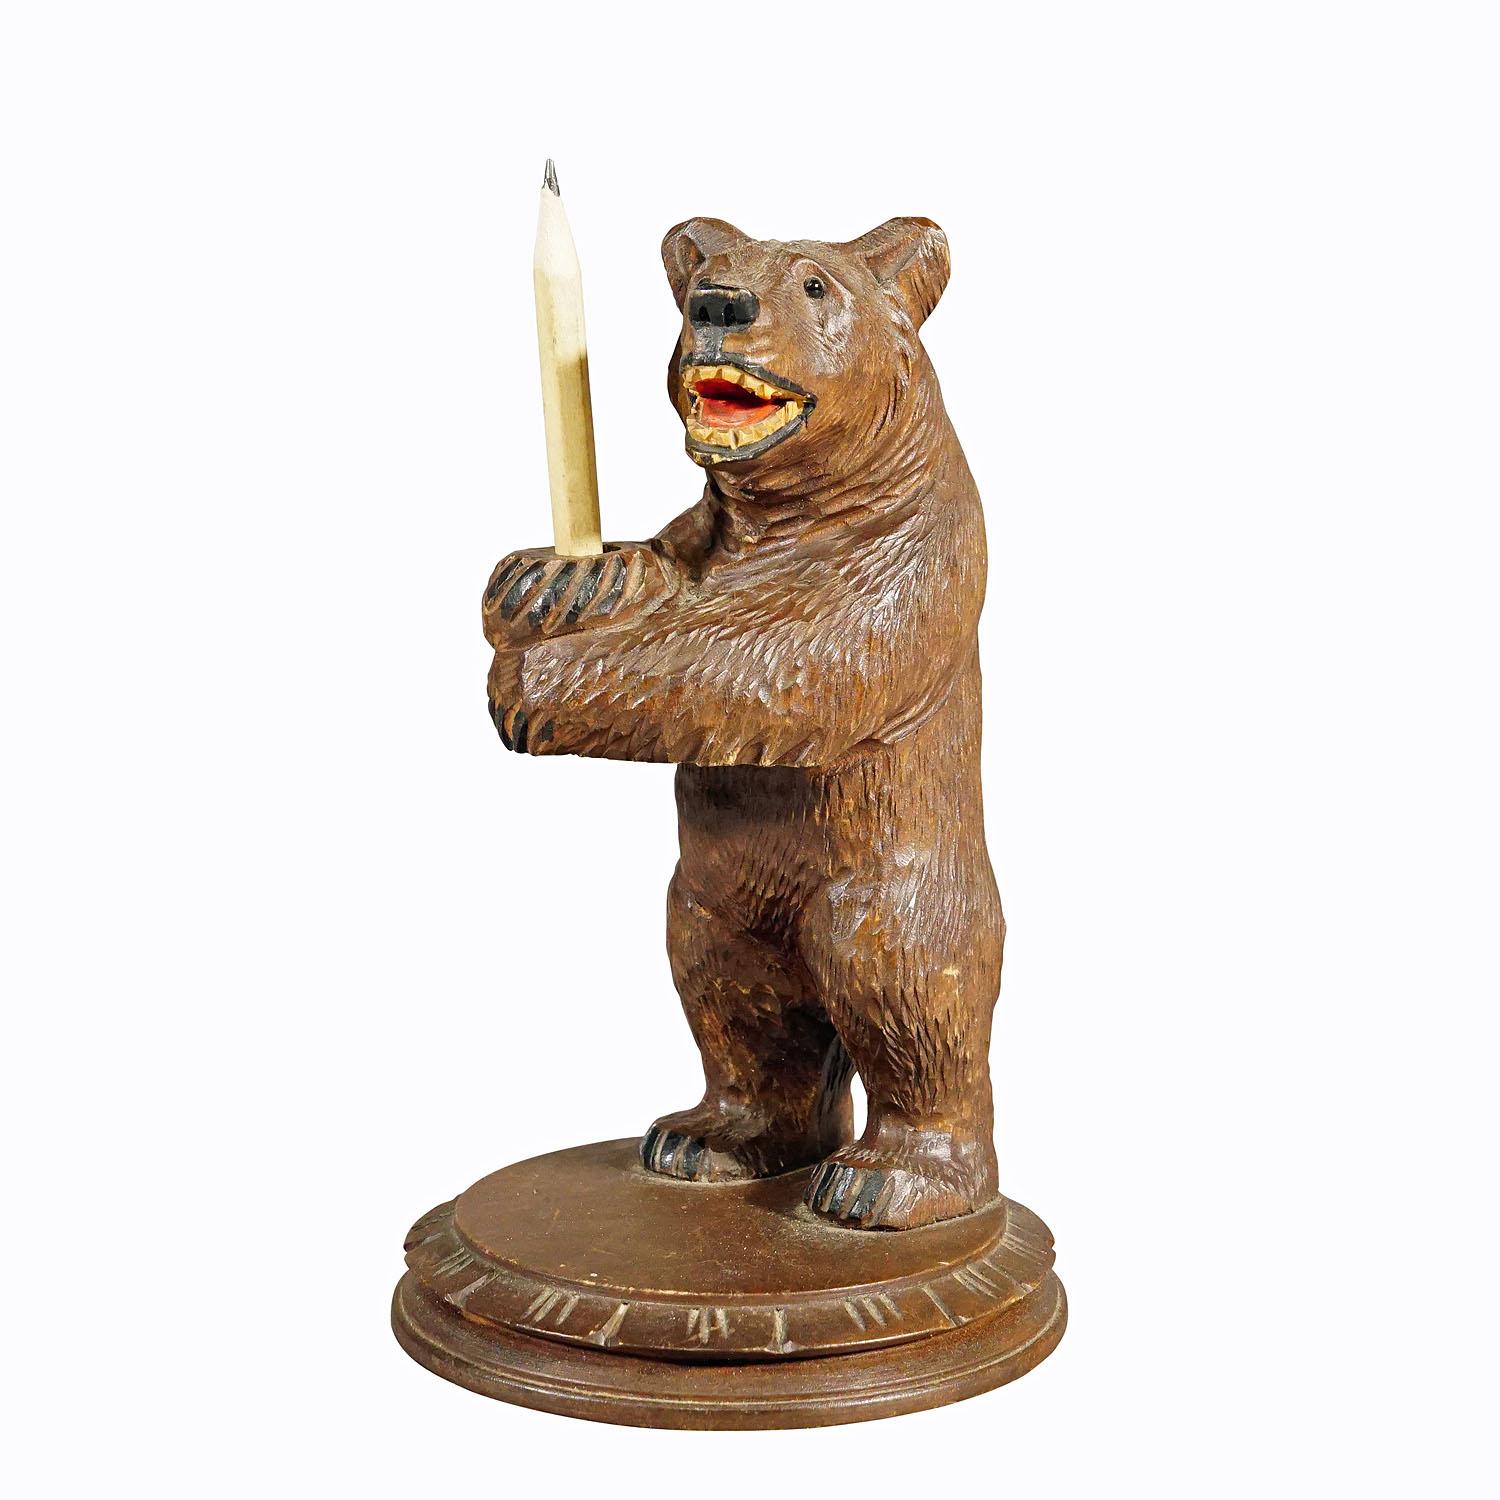 Porte-crayon ours vintage en bois sculpté à la main à Brienz vers les années 1930.

Statue vintage d'un ours de la Forêt Noire tenant un crayon. En bois de tilleul, finement sculpté à la main avec des détails naturalistes à Brienz, en Suisse, vers